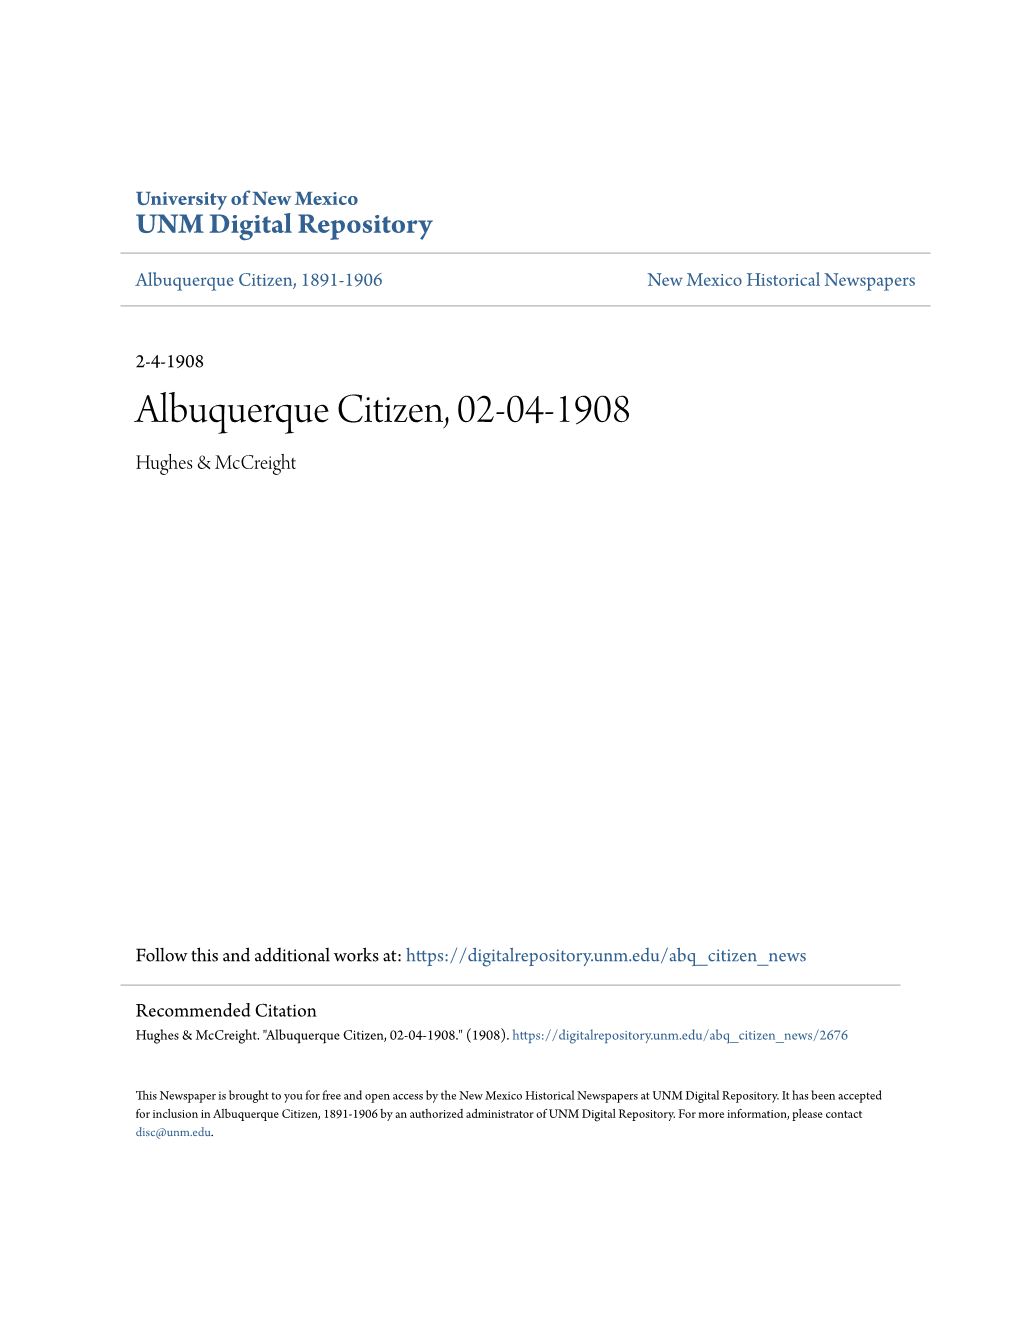 Albuquerque Citizen, 02-04-1908 Hughes & Mccreight